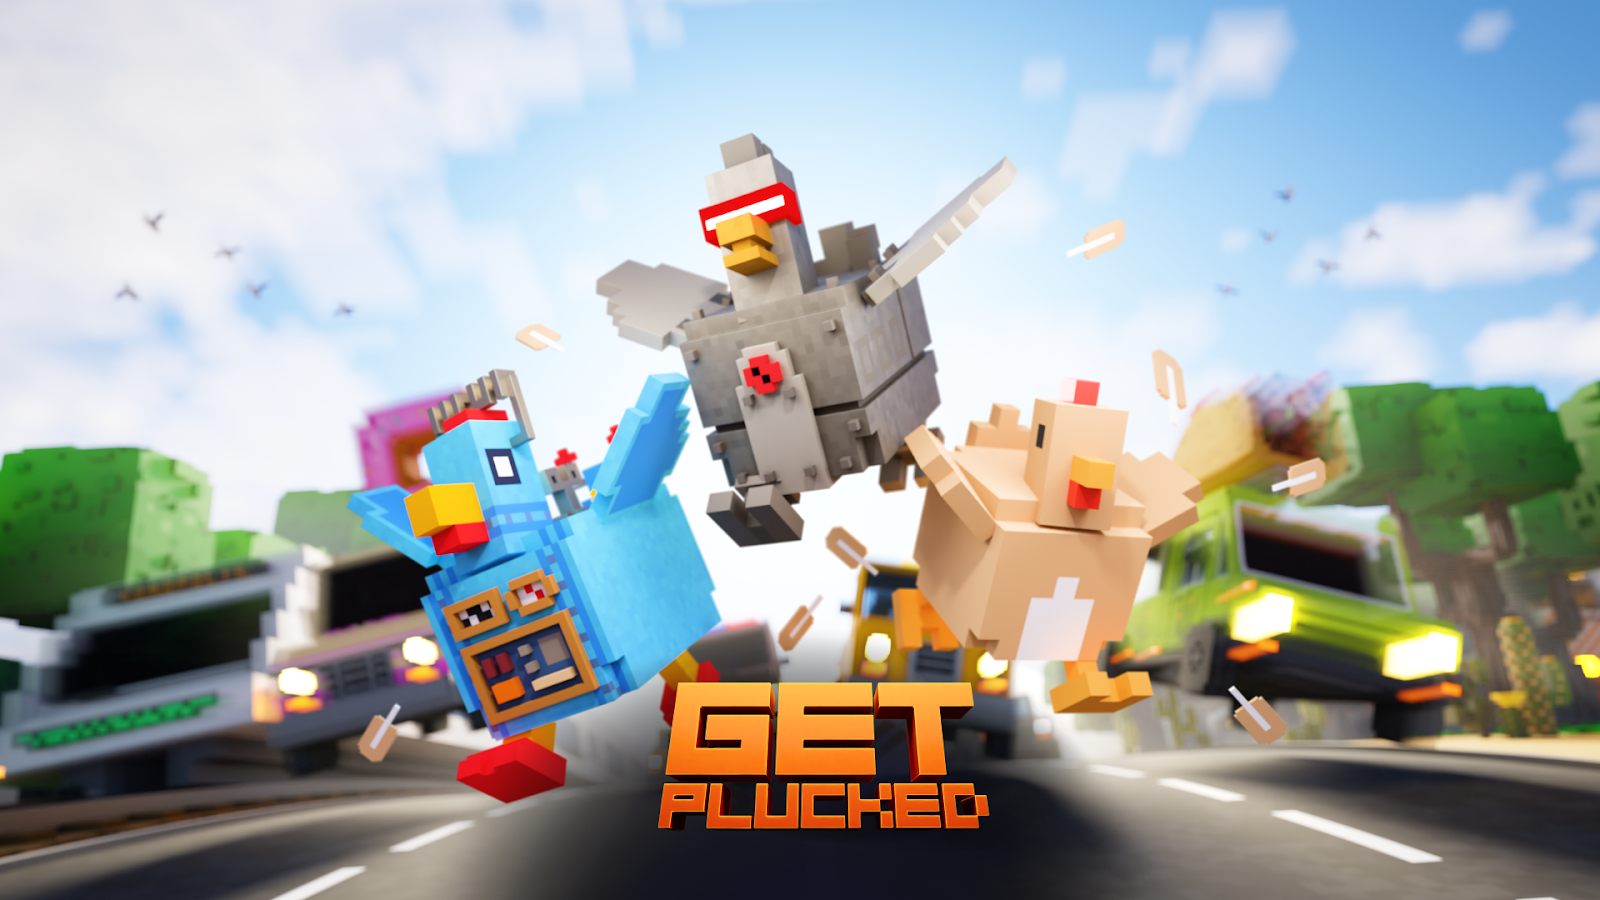 エクセレントで終わりのないランナーゲーム
「Get Plucked!」が登場！